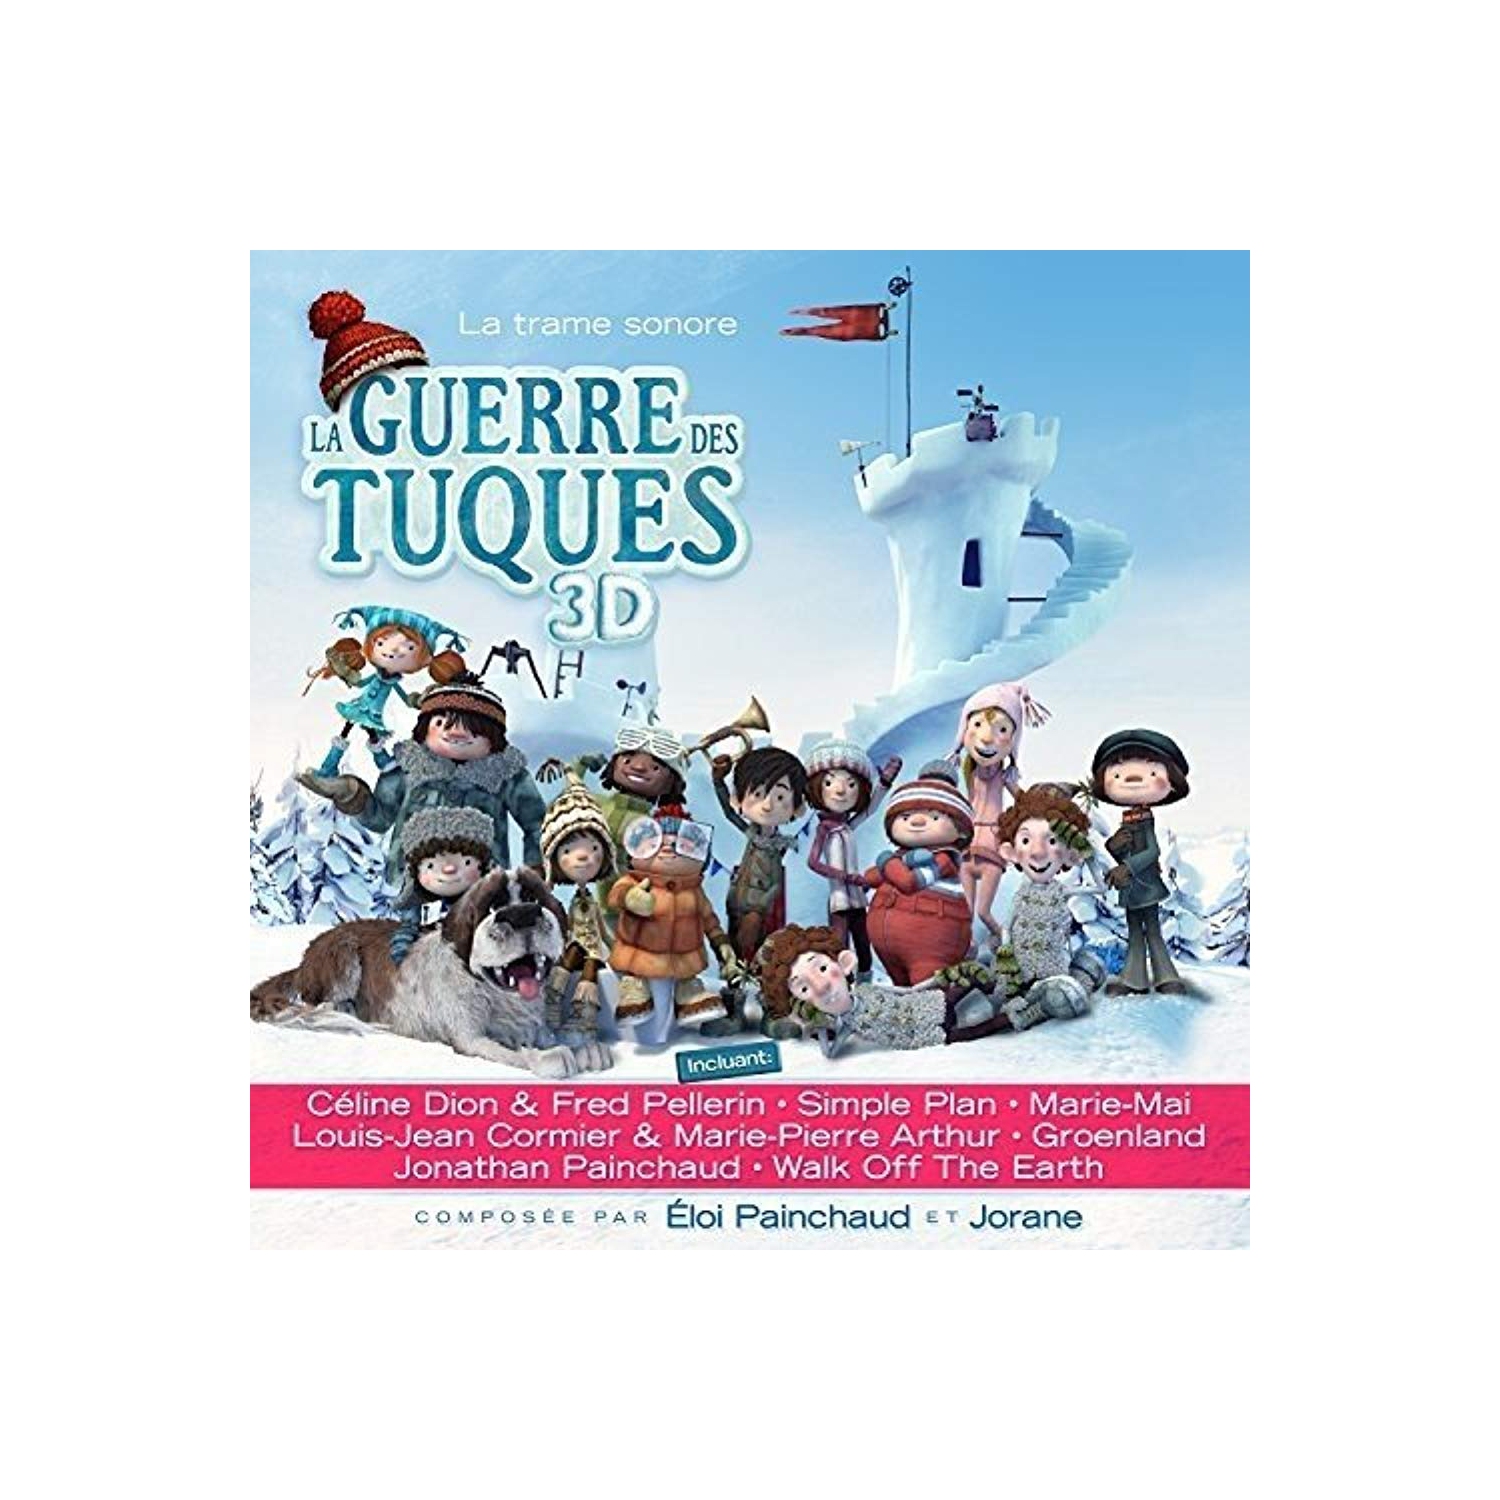 La Guerre Des Tuques 3d (La Trame So Nore) [Audio CD] Various